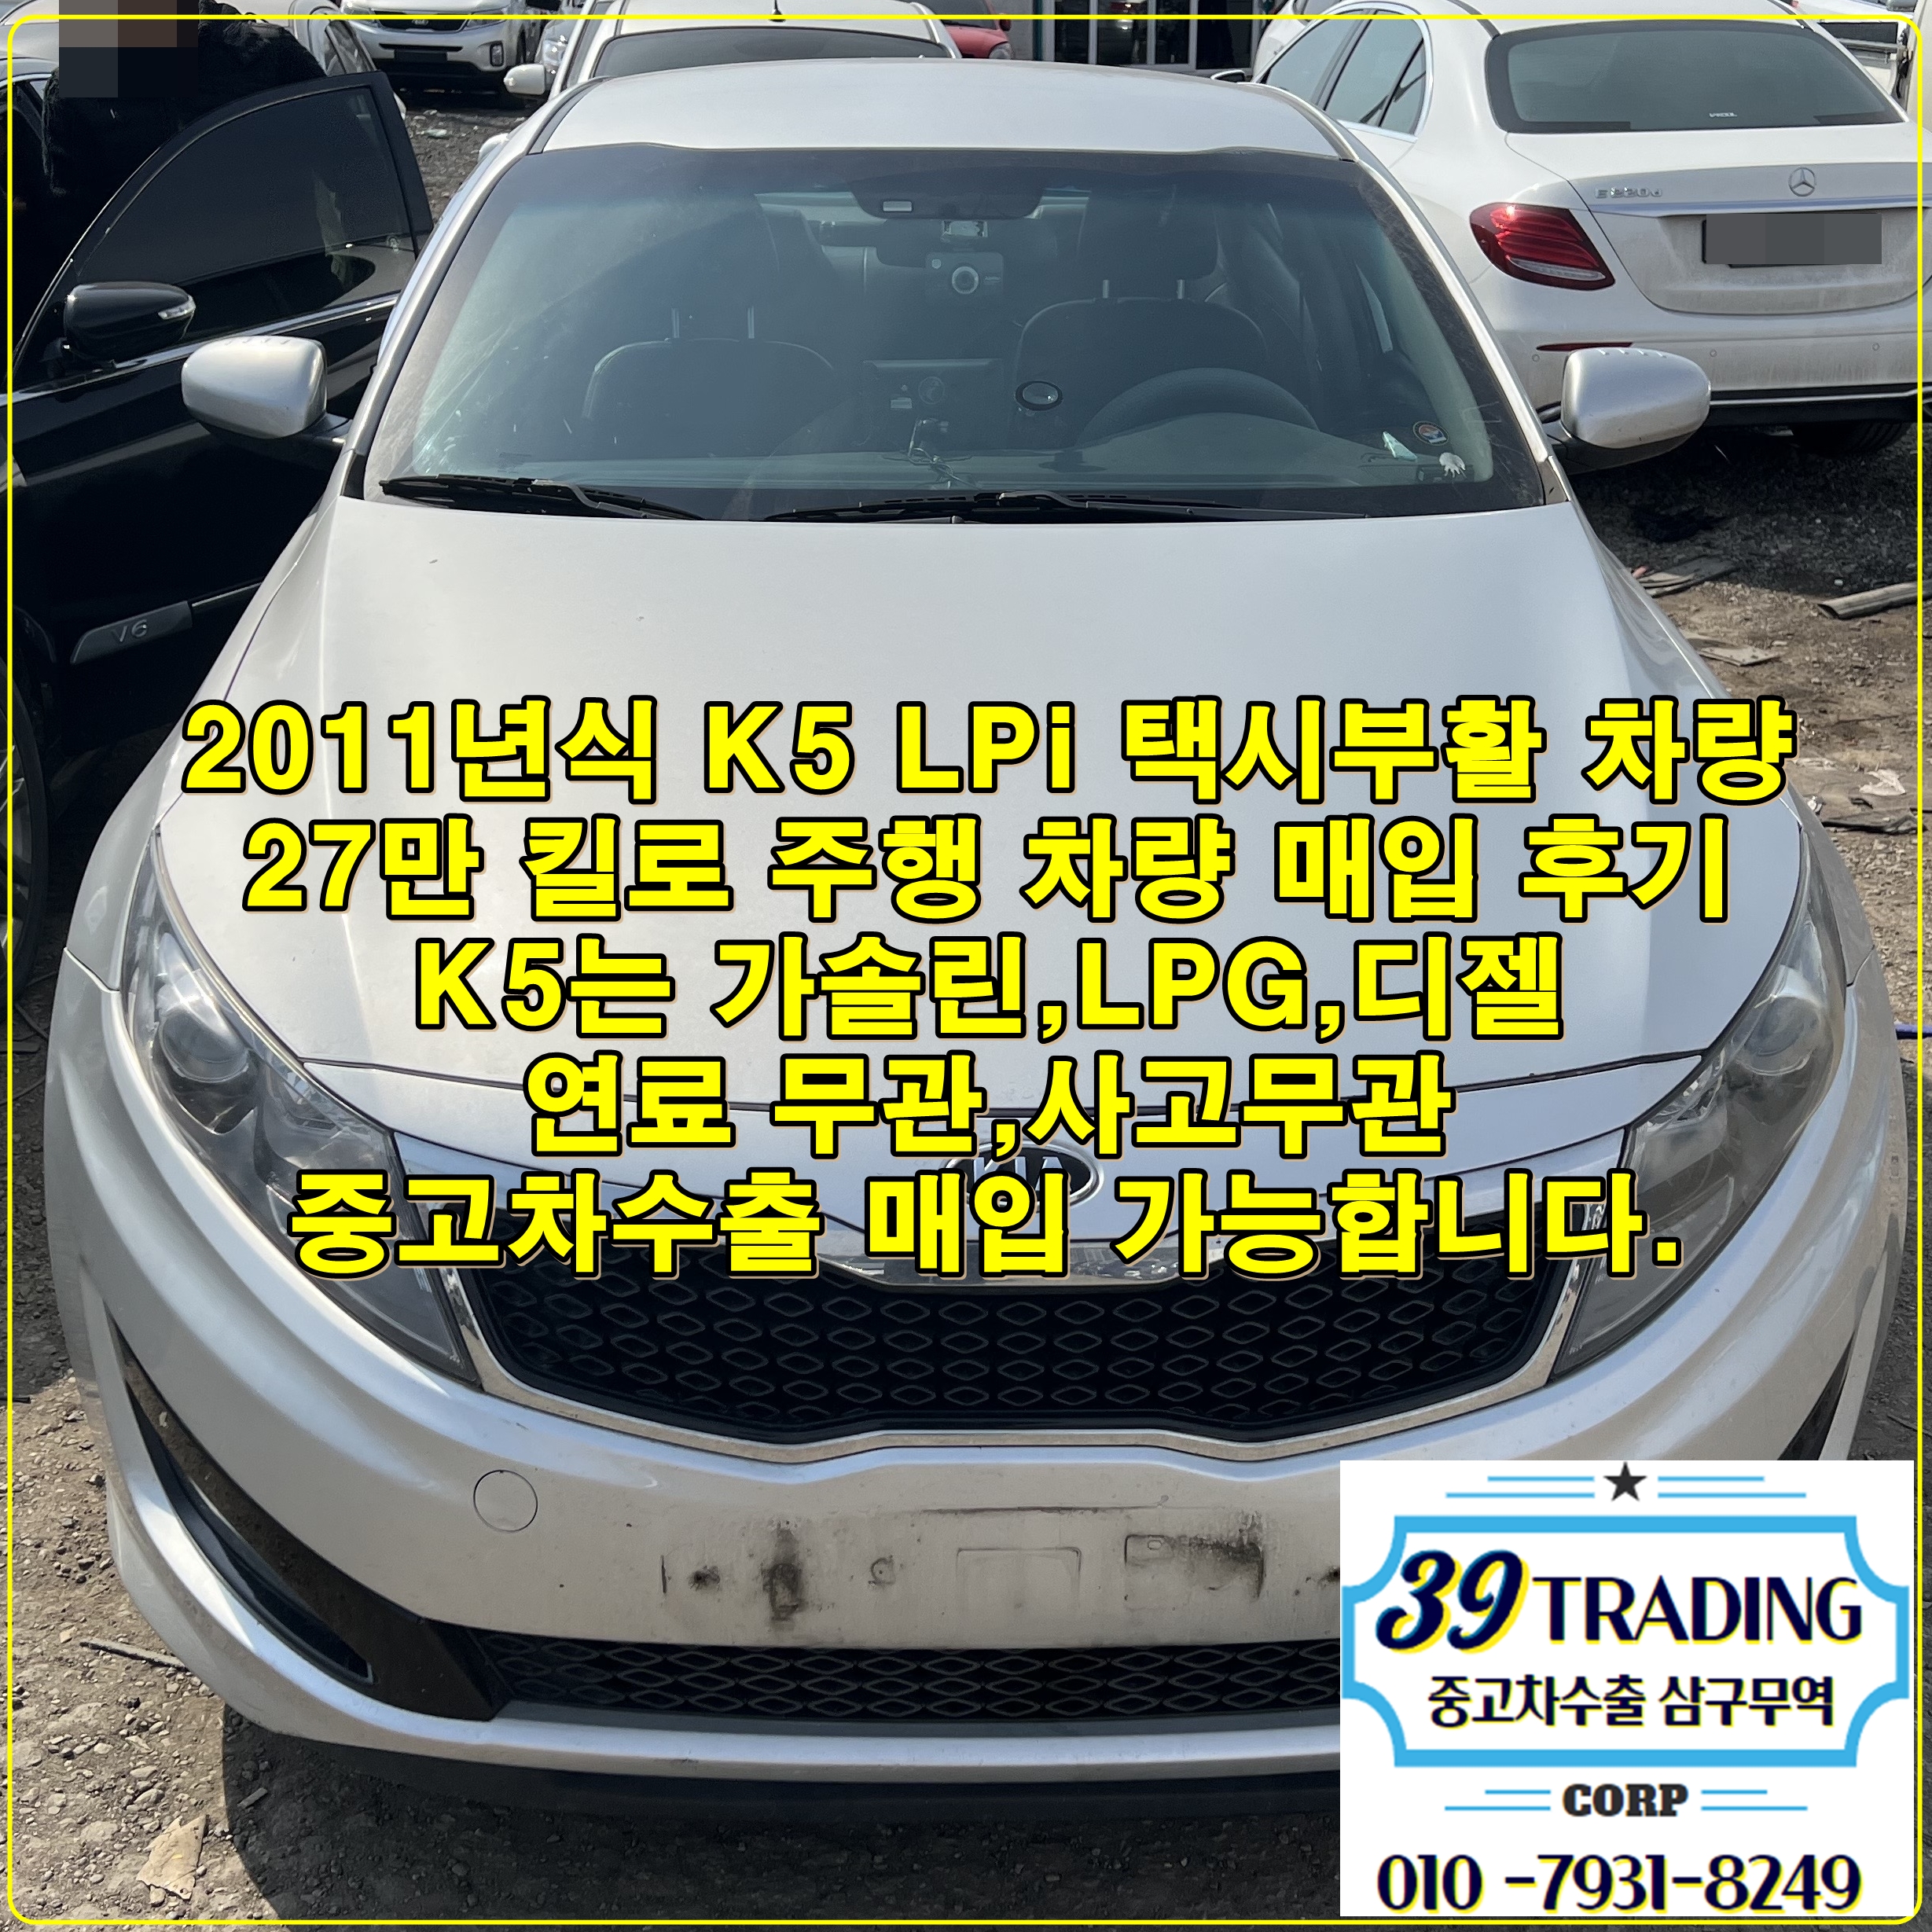 2011년식 K5 택부 LPG 27만킬로 주행, 중고차수출로 고가판매!